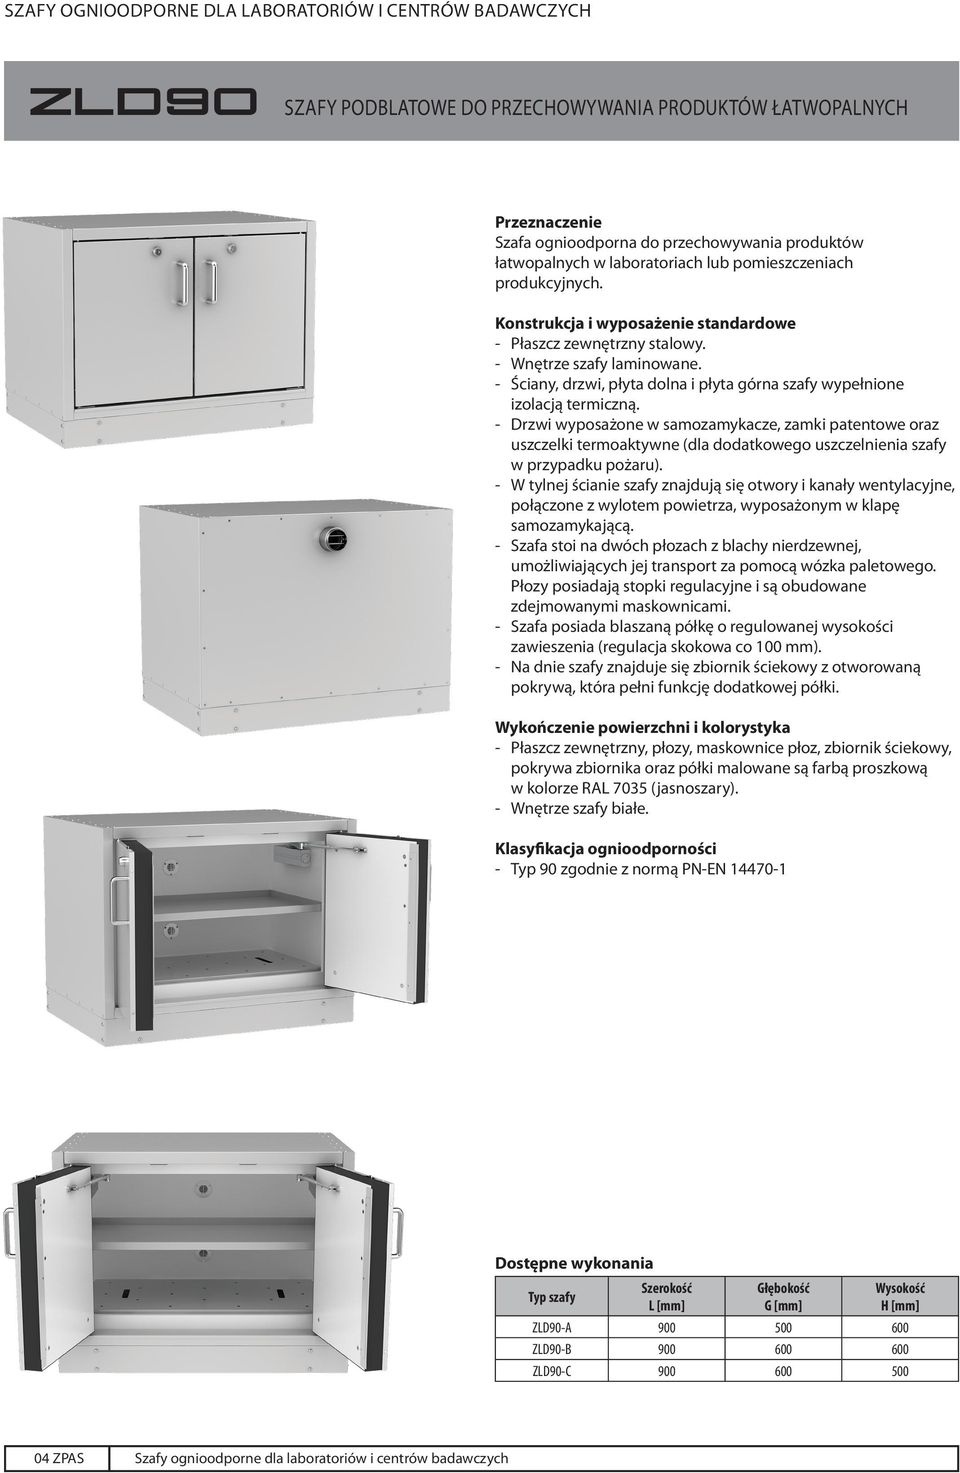 - Drzwi wyposażone w samozamykacze, zamki patentowe oraz uszczelki termoaktywne (dla dodatkowego uszczelnienia szafy w przypadku pożaru).